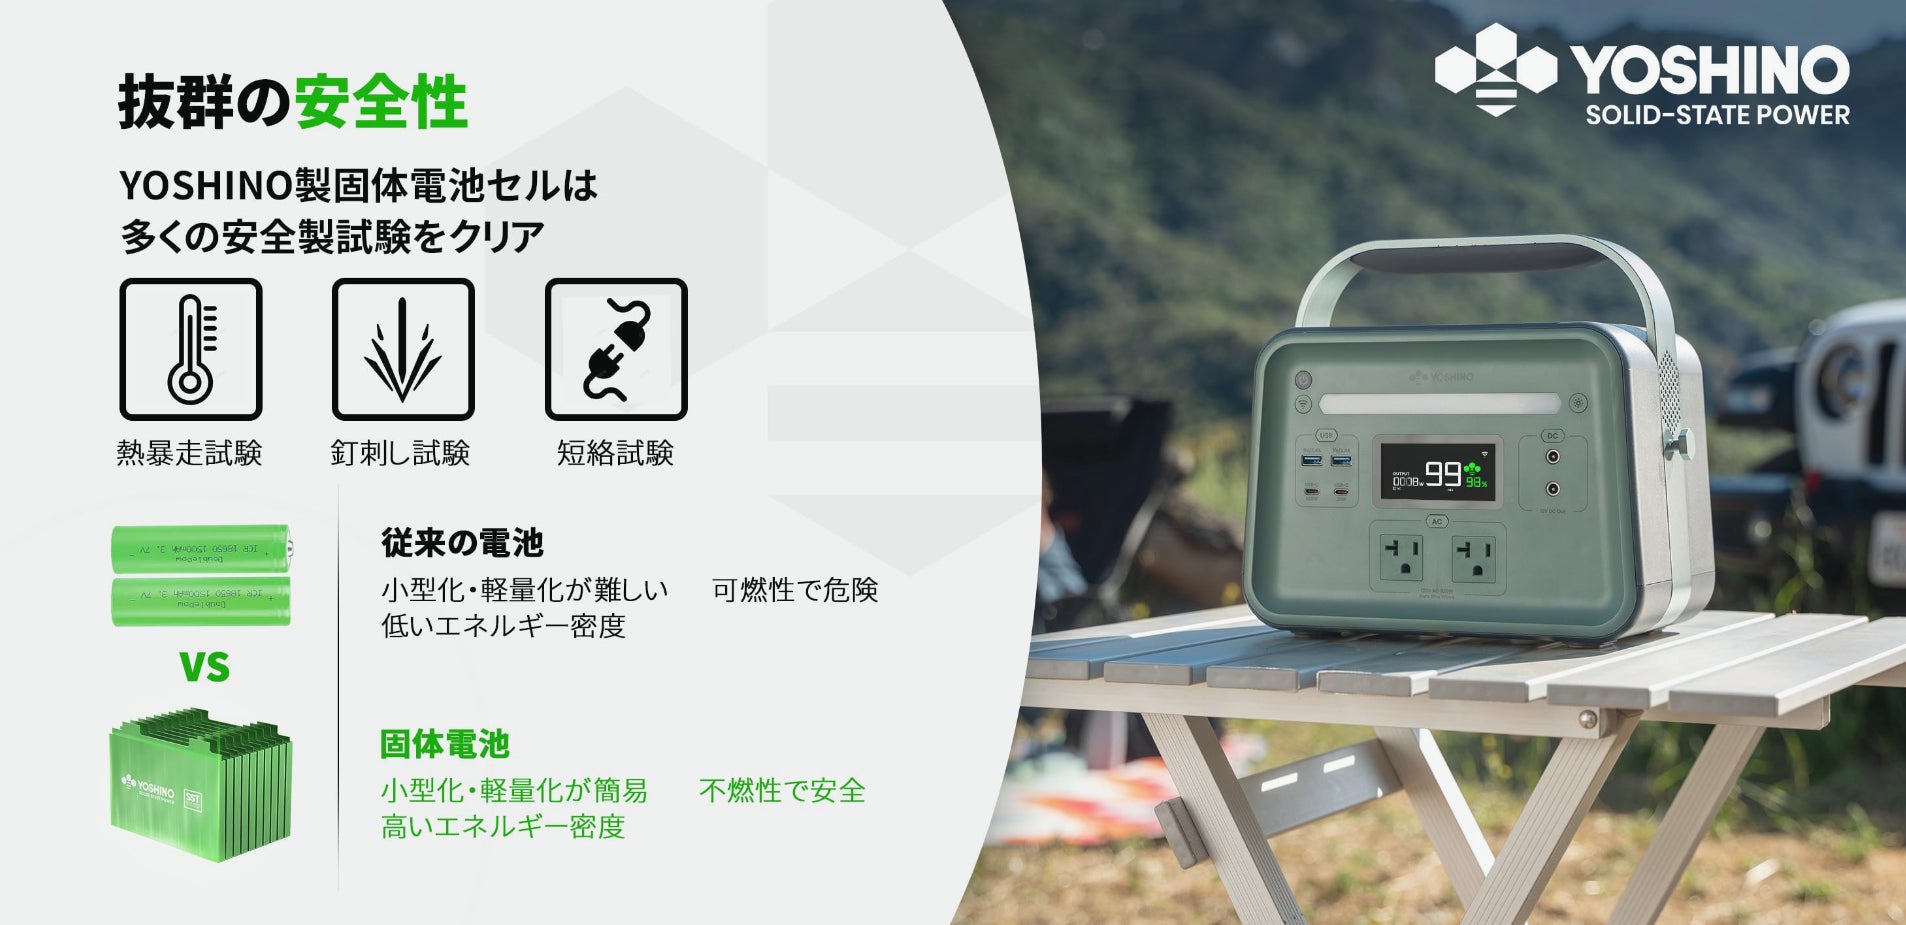 【日本初上陸】世界初の固体電池搭載ポータブル電源がAmazonより販売開始！高い性能とスタイリッシュなデザインを併せ持つ今までにないポタ電登場のサブ画像10